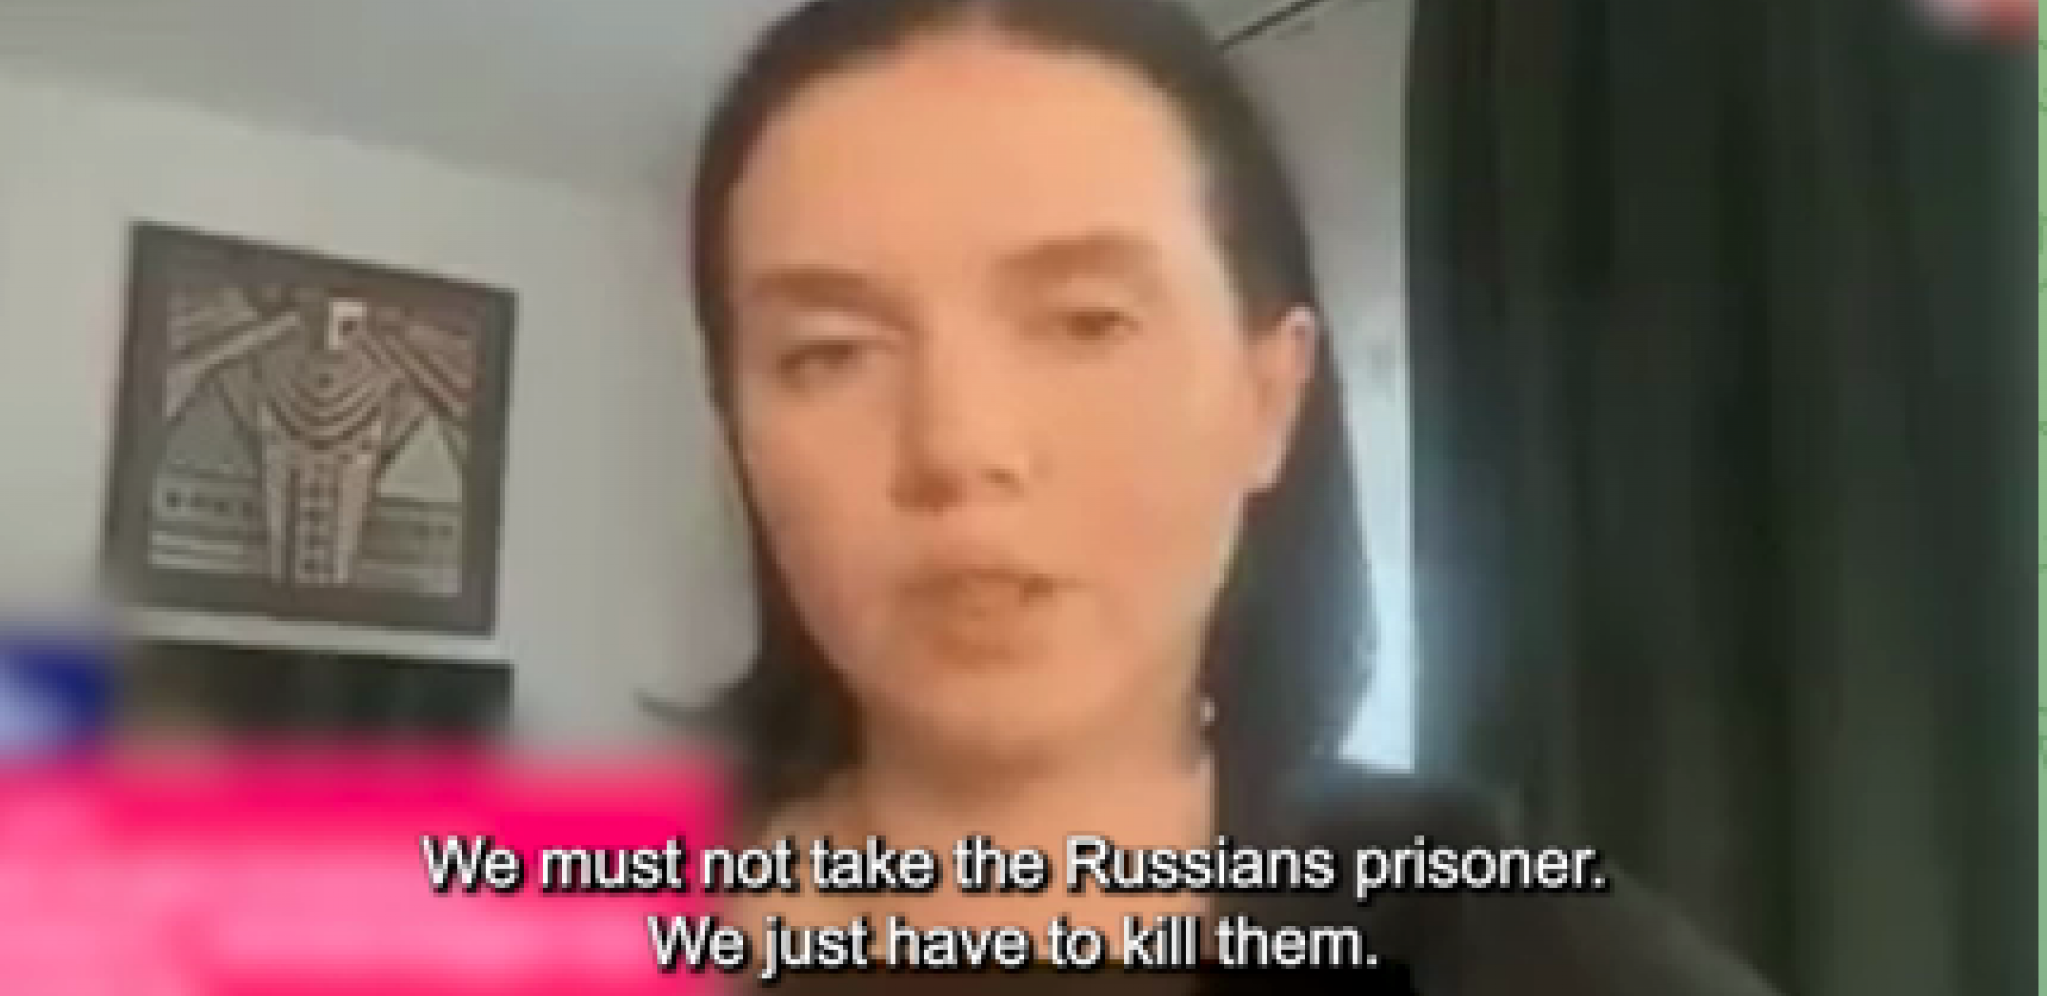 UKRAJINSKA NOVINARKA ŠOKIRALA SVET: "Ne treba da uzimamo ruske zarobljenike. Treba da ih pobijemo!"  (VIDEO)